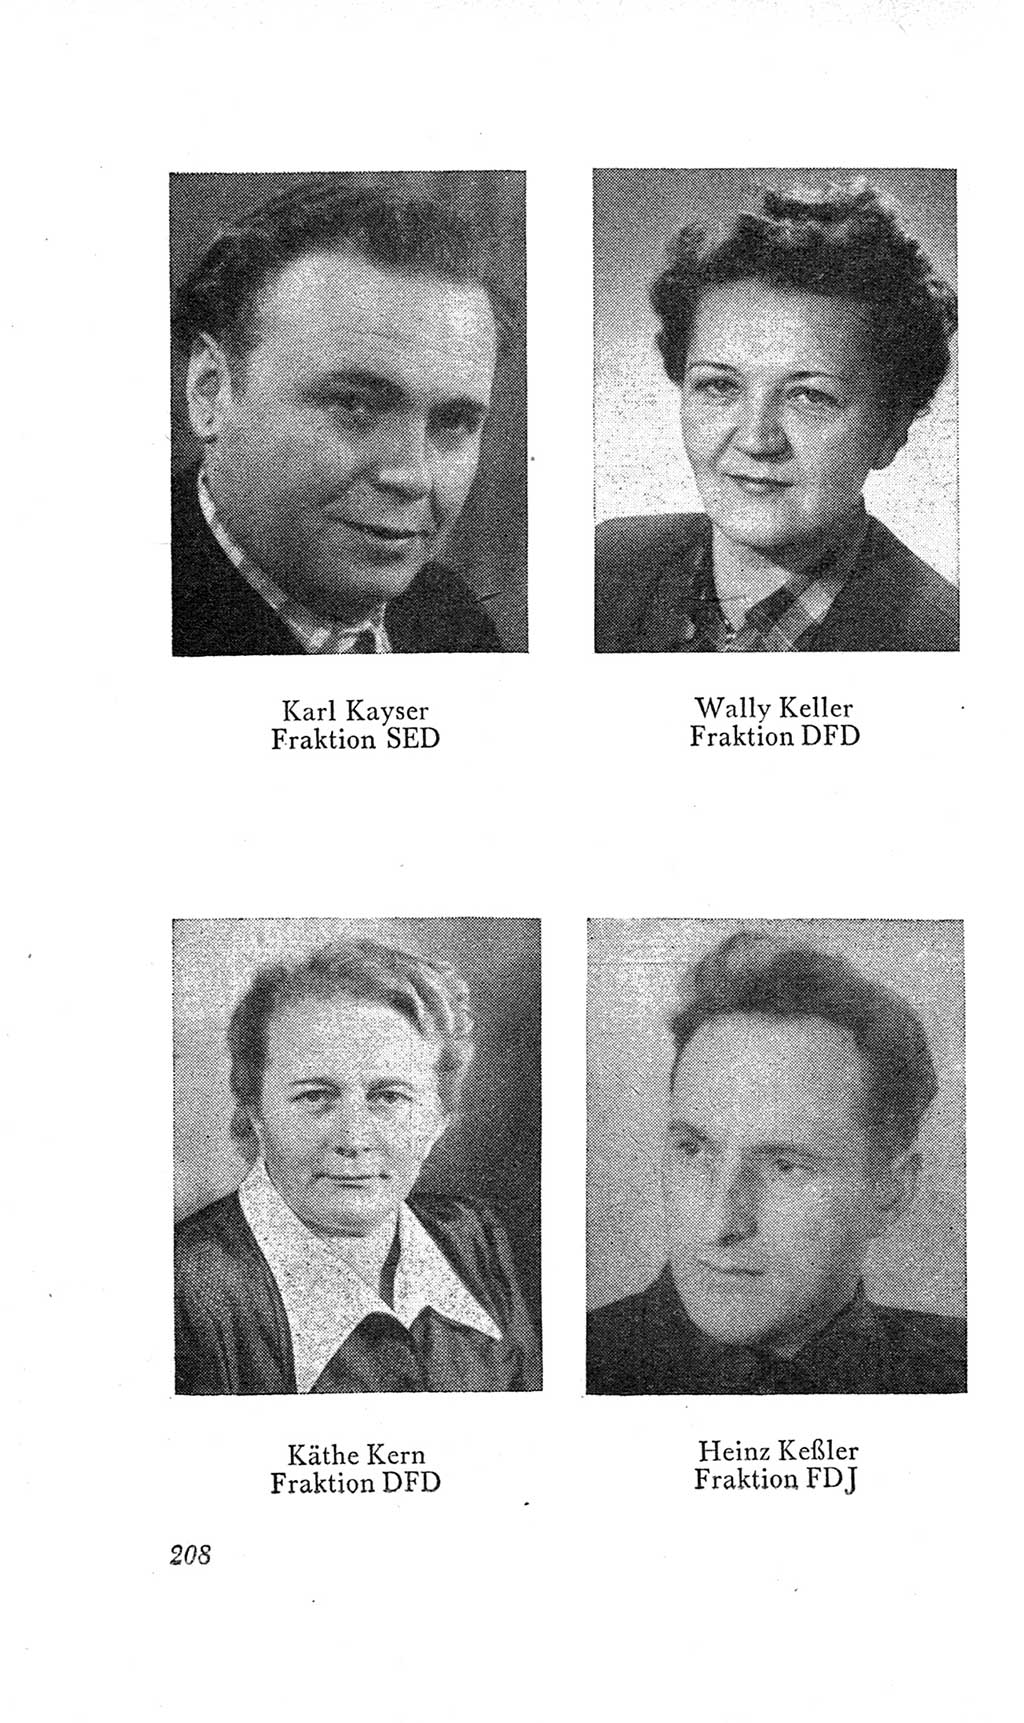 Handbuch der Volkskammer (VK) der Deutschen Demokratischen Republik (DDR), 2. Wahlperiode 1954-1958, Seite 208 (Hdb. VK. DDR, 2. WP. 1954-1958, S. 208)